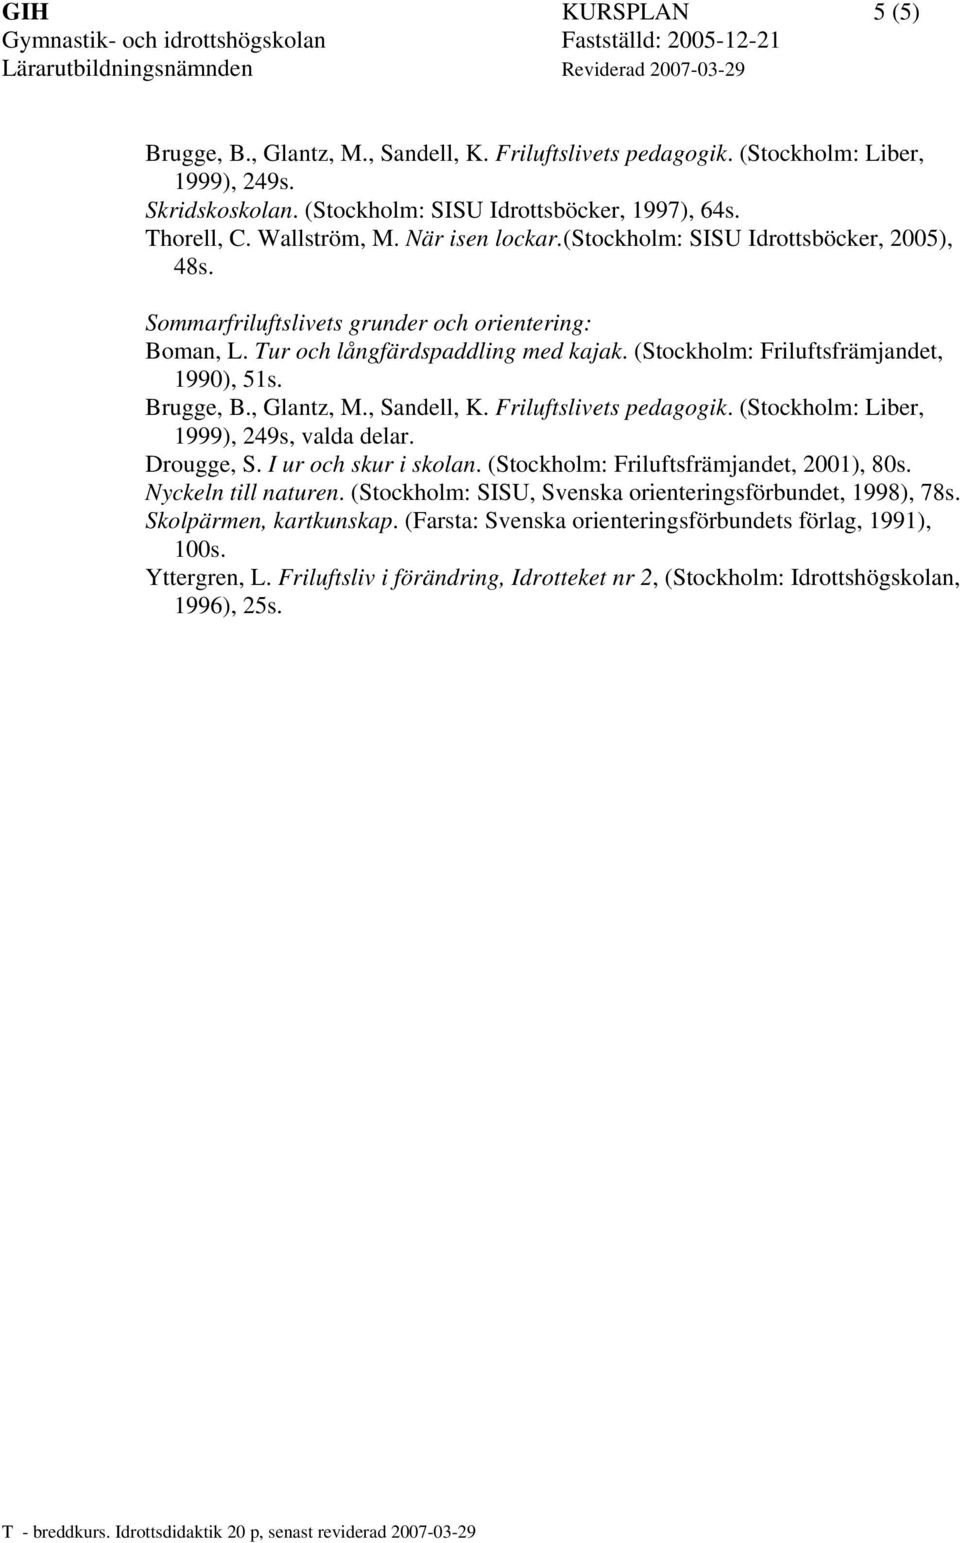 Brugge, B., Glantz, M., Sandell, K. Friluftslivets pedagogik. (Stockholm: Liber, 1999), 249s, valda delar. Drougge, S. I ur och skur i skolan. (Stockholm: Friluftsfrämjandet, 2001), 80s.